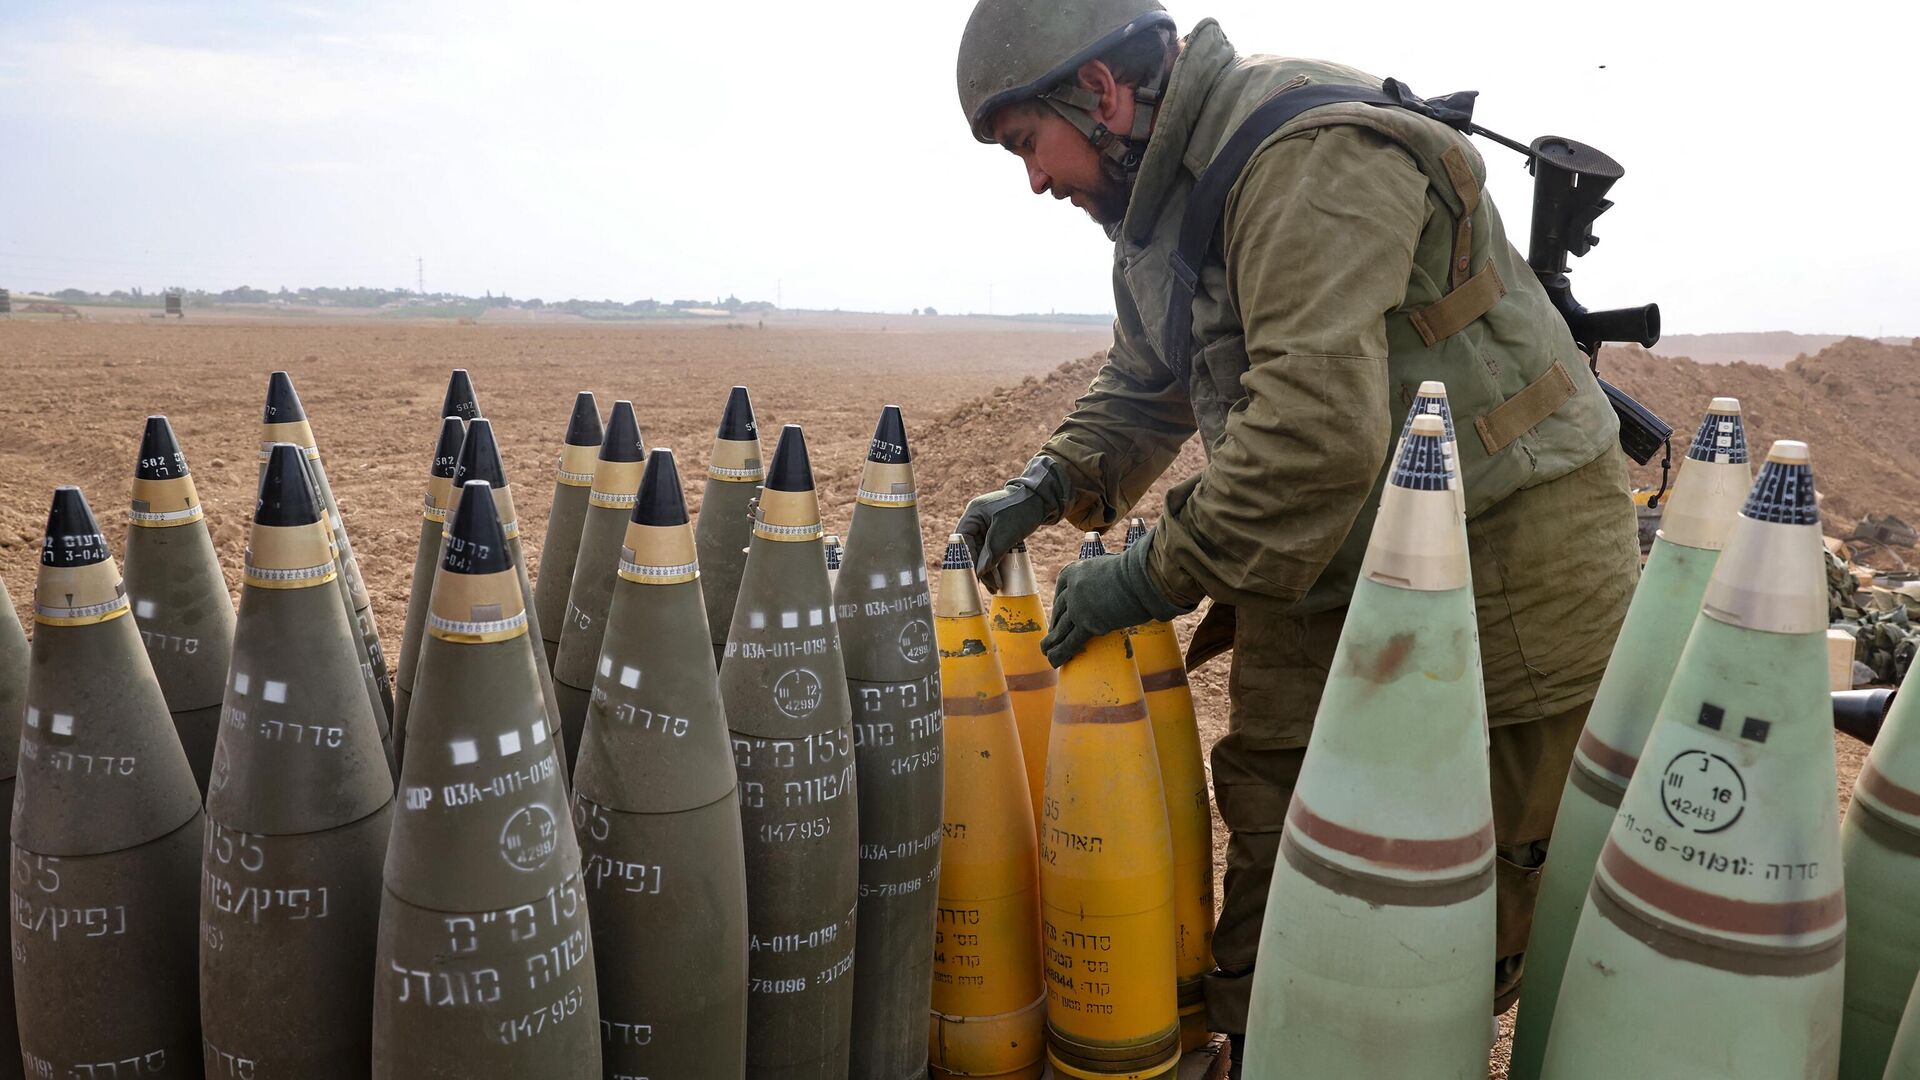 Exército israelense se prepara para uma guerra em 2018, diz chefe